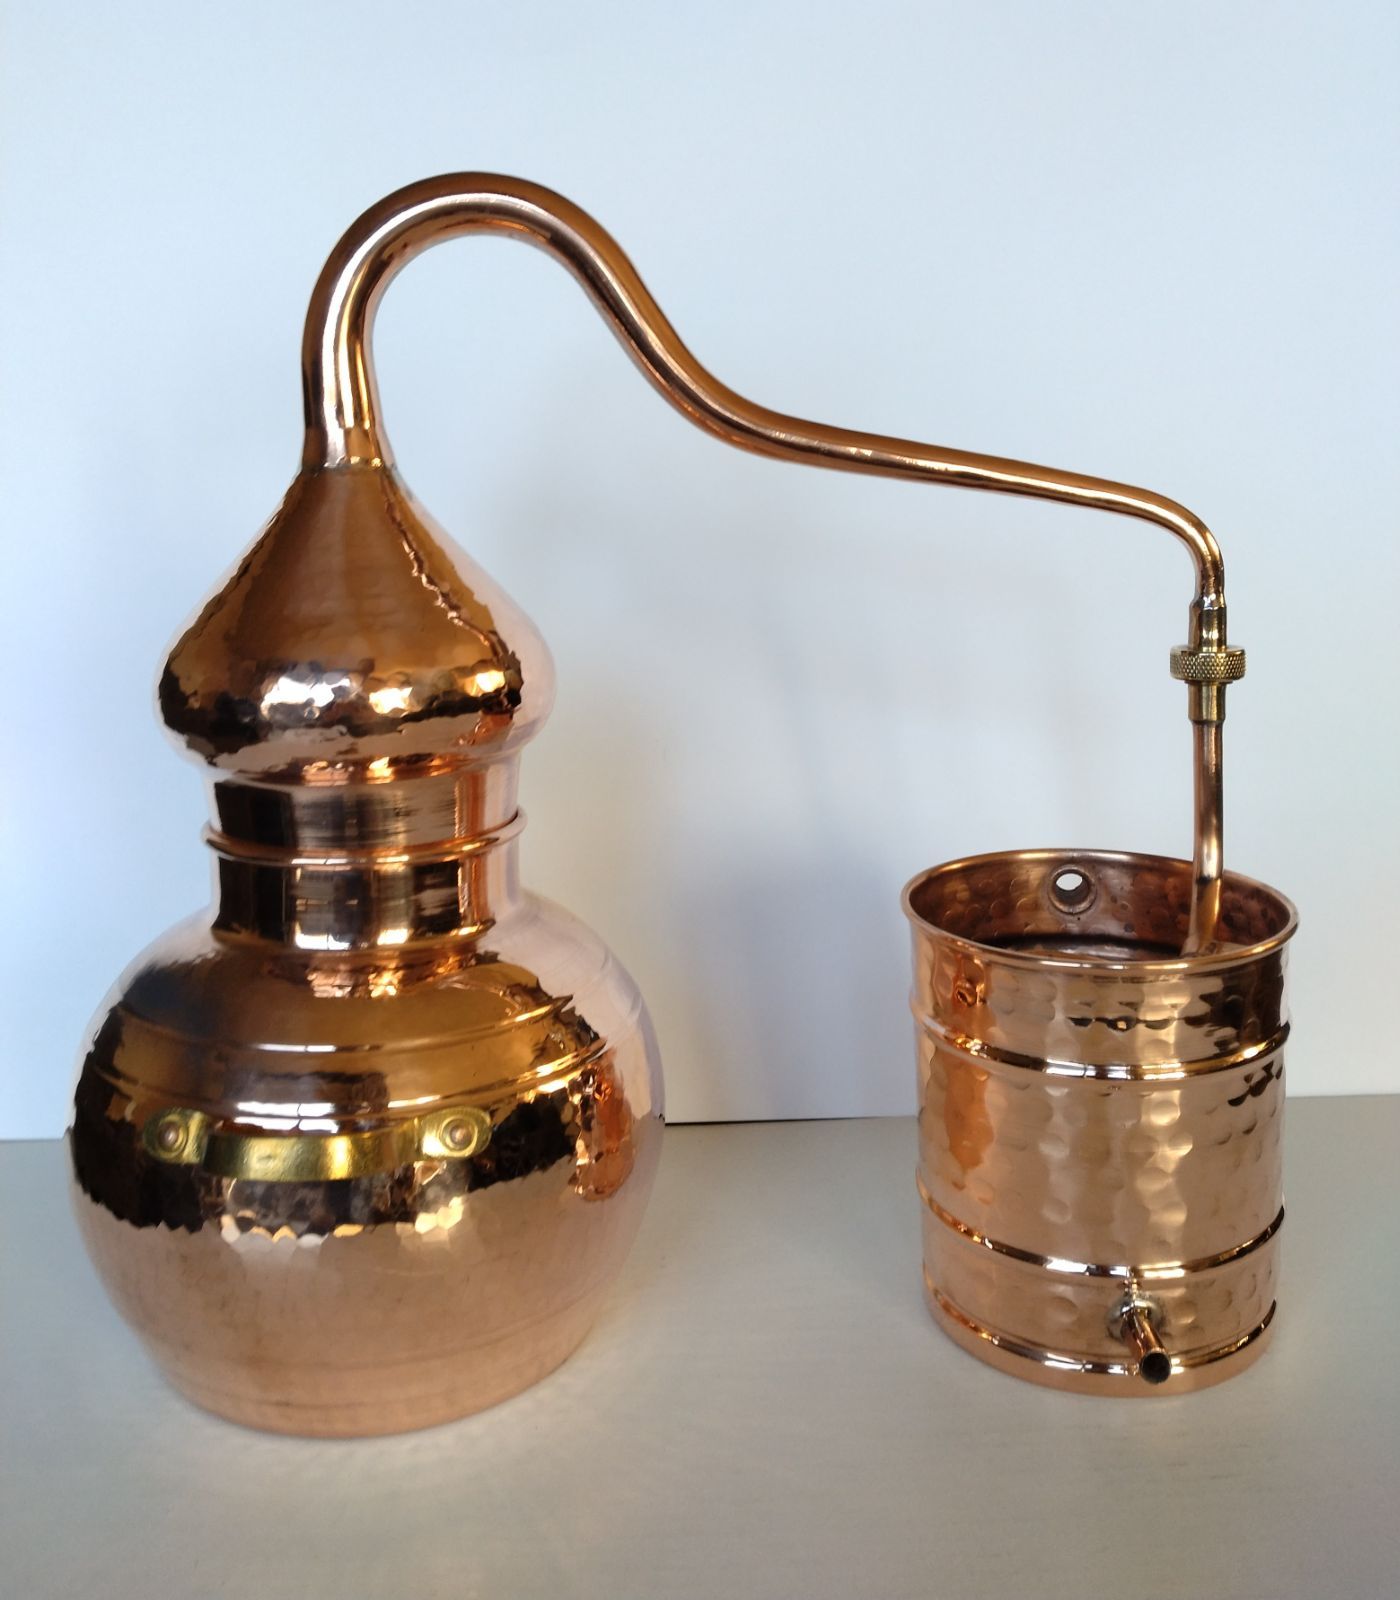 アランビック3.0 銅製蒸留器 おうちで手作り蒸留水 アロマ 精油 